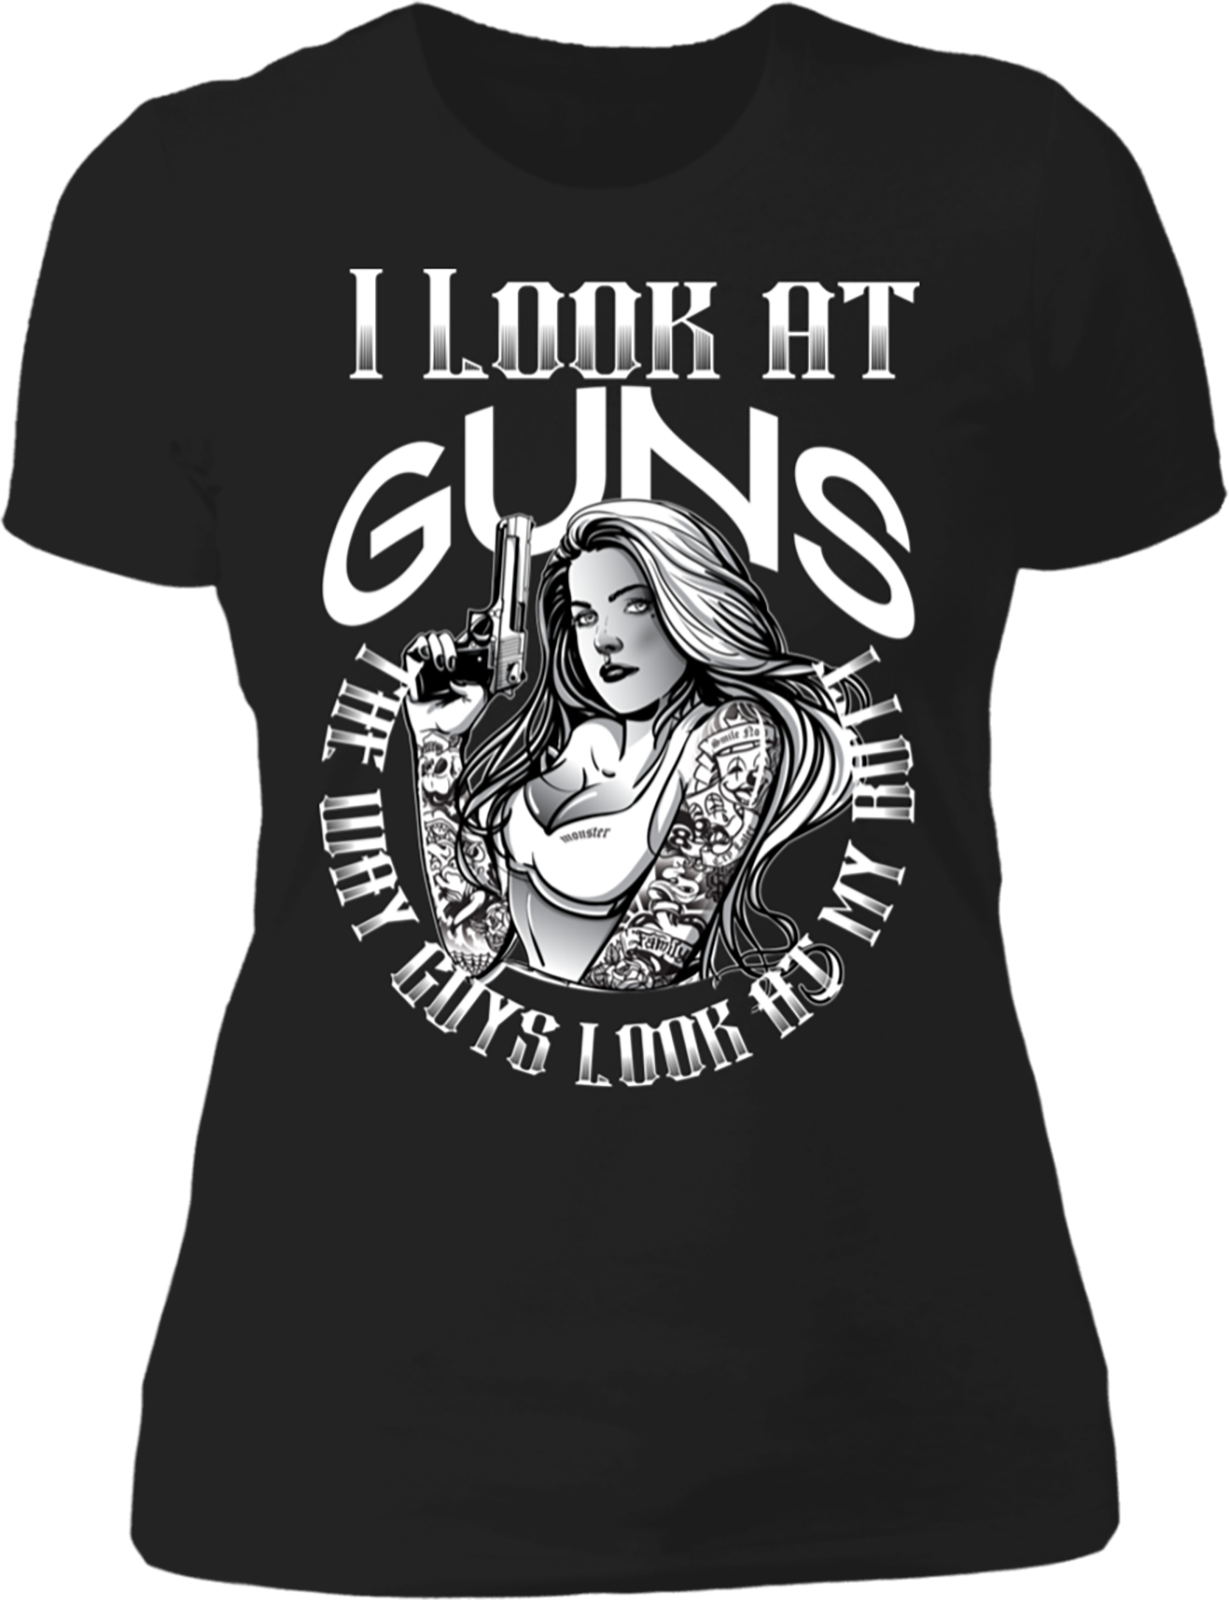 I look at guns the way guys look at my butt - Woamn and gun